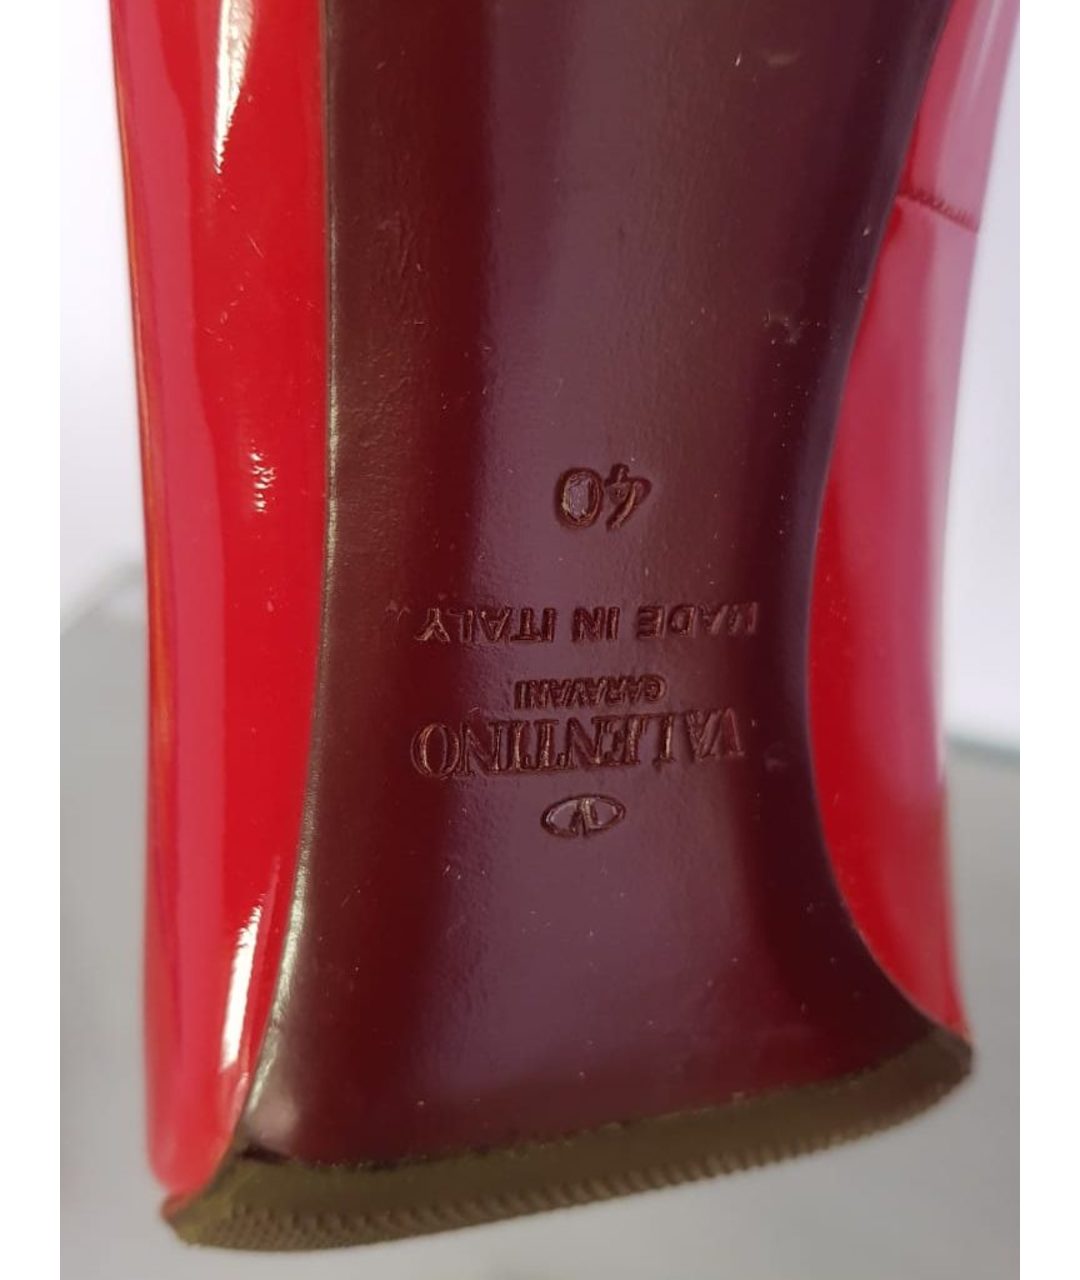 VALENTINO GARAVANI Красные туфли из лакированной кожи, фото 4